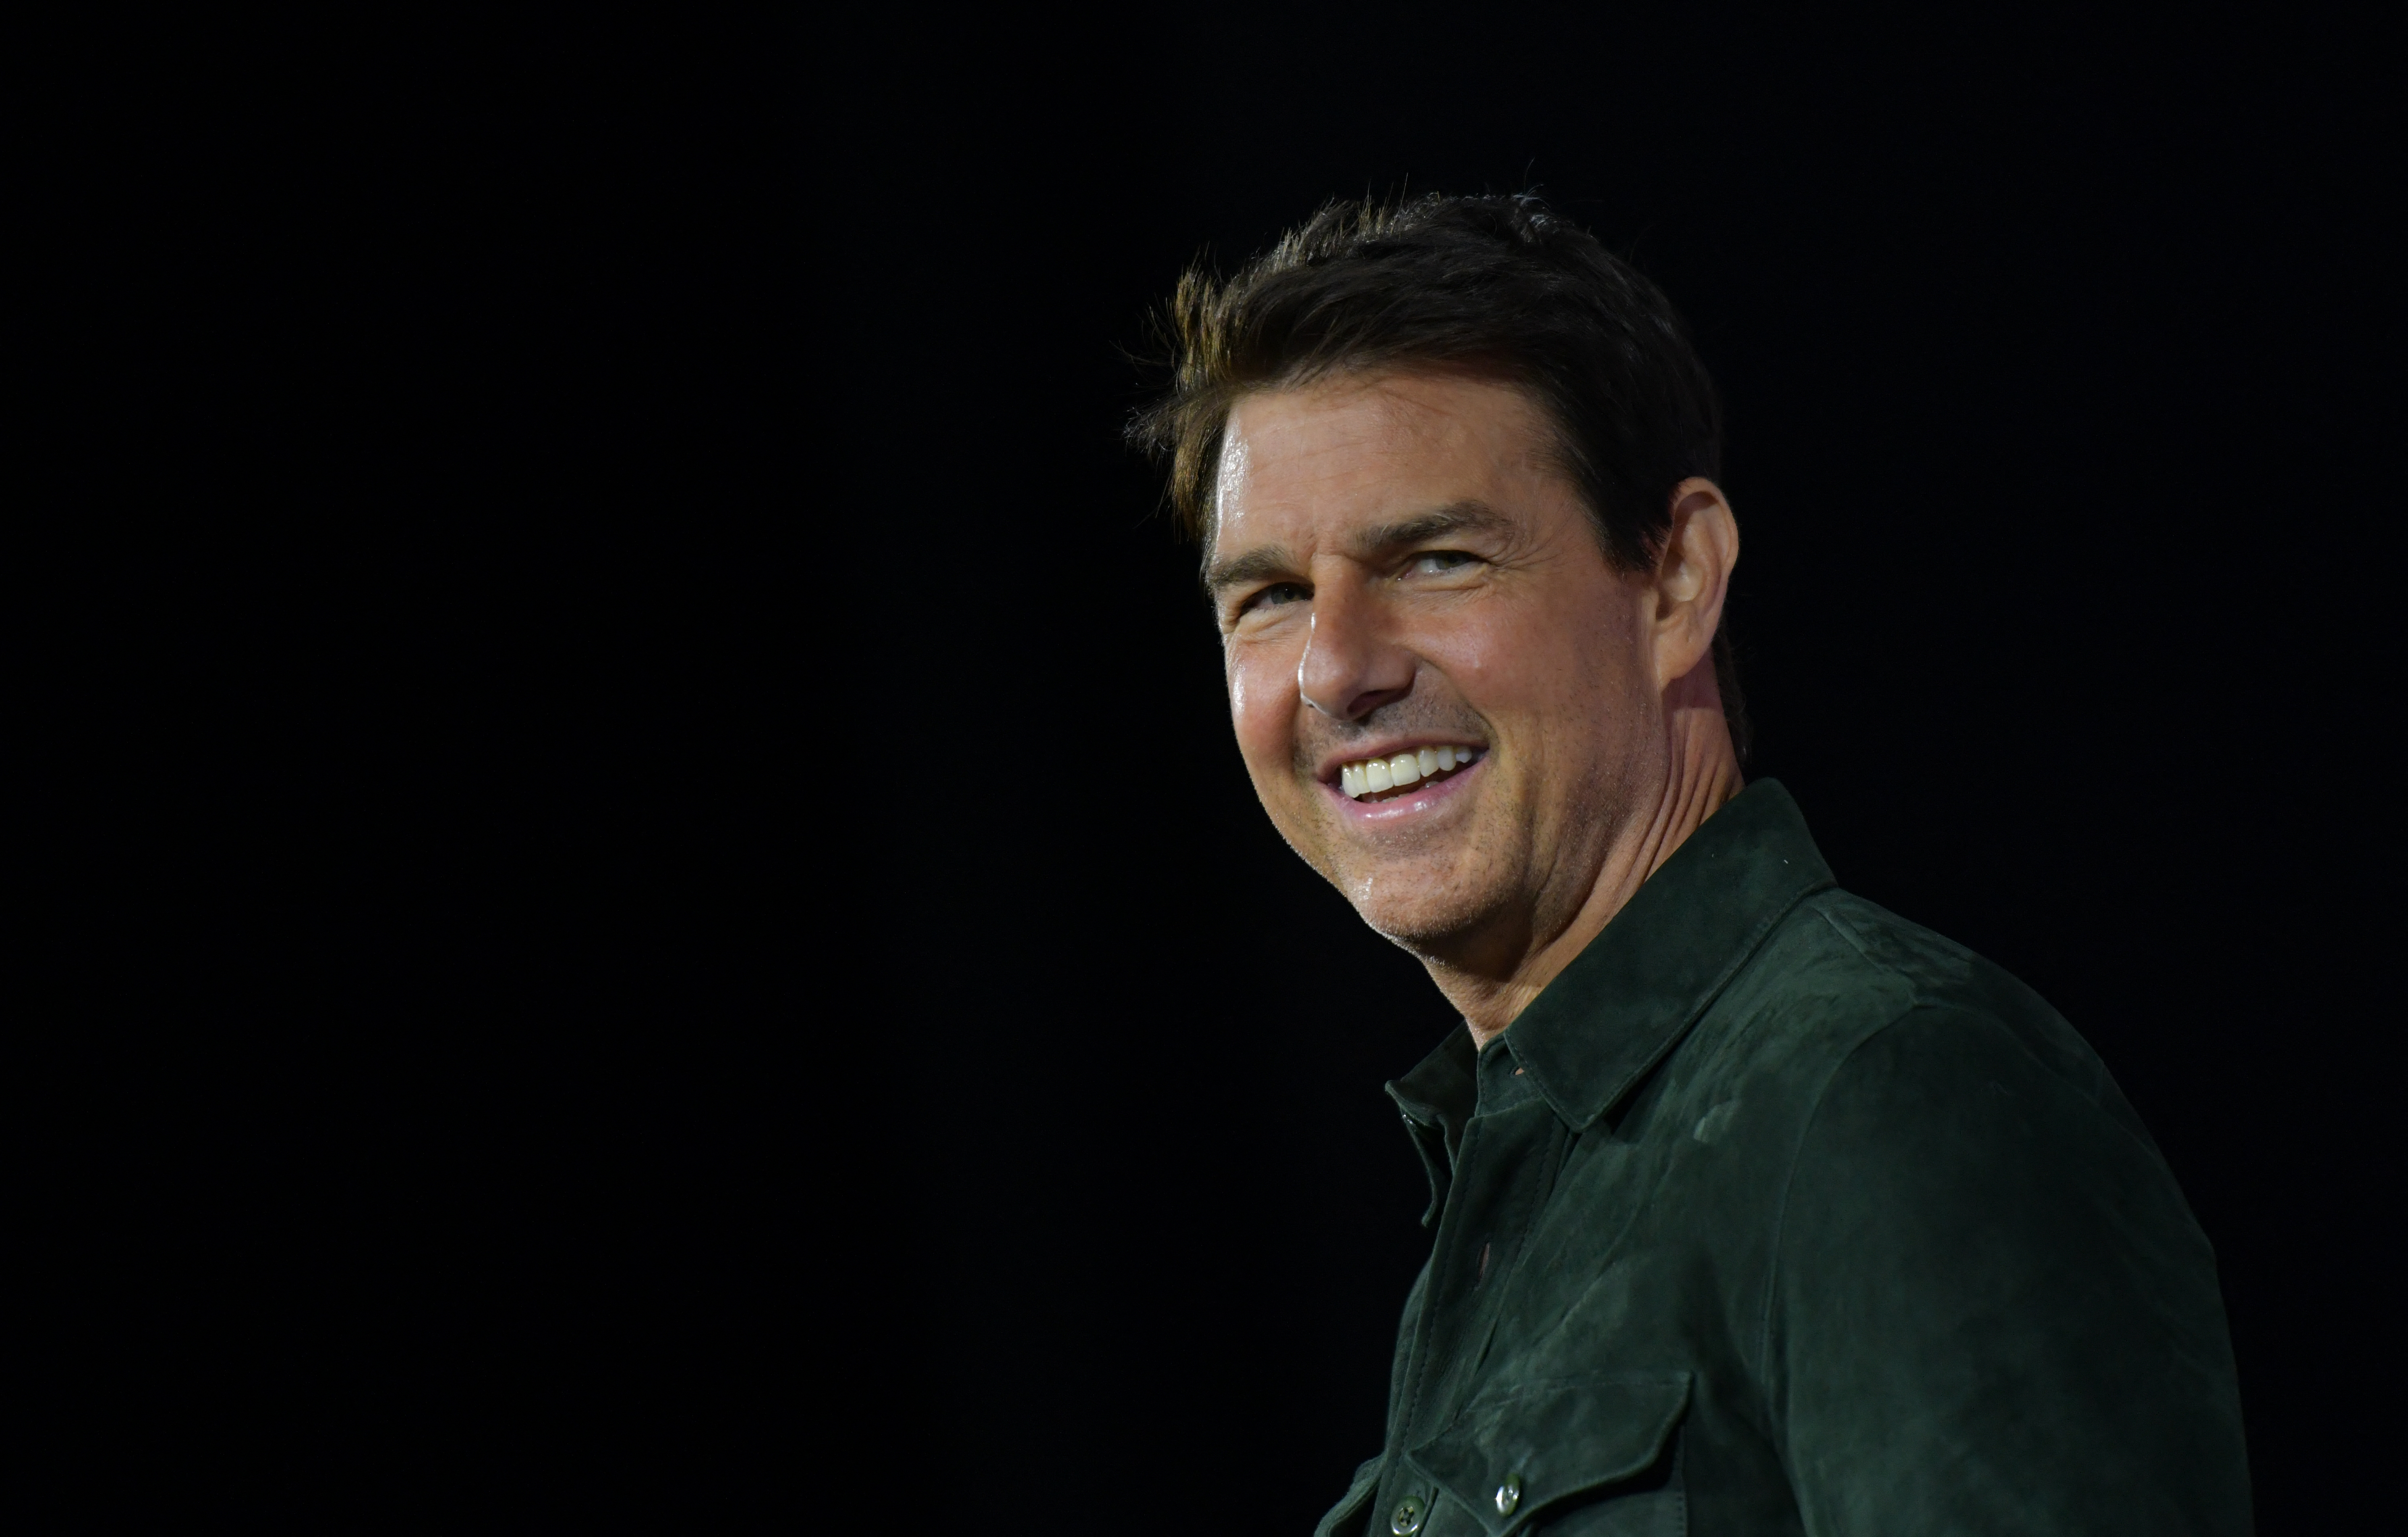 Tom Cruise fait la promotion de "Top Gun : Maverick" au Convention Center pendant le Comic Con à San Diego, Californie, le 18 juillet 2019 | Source : Getty Images